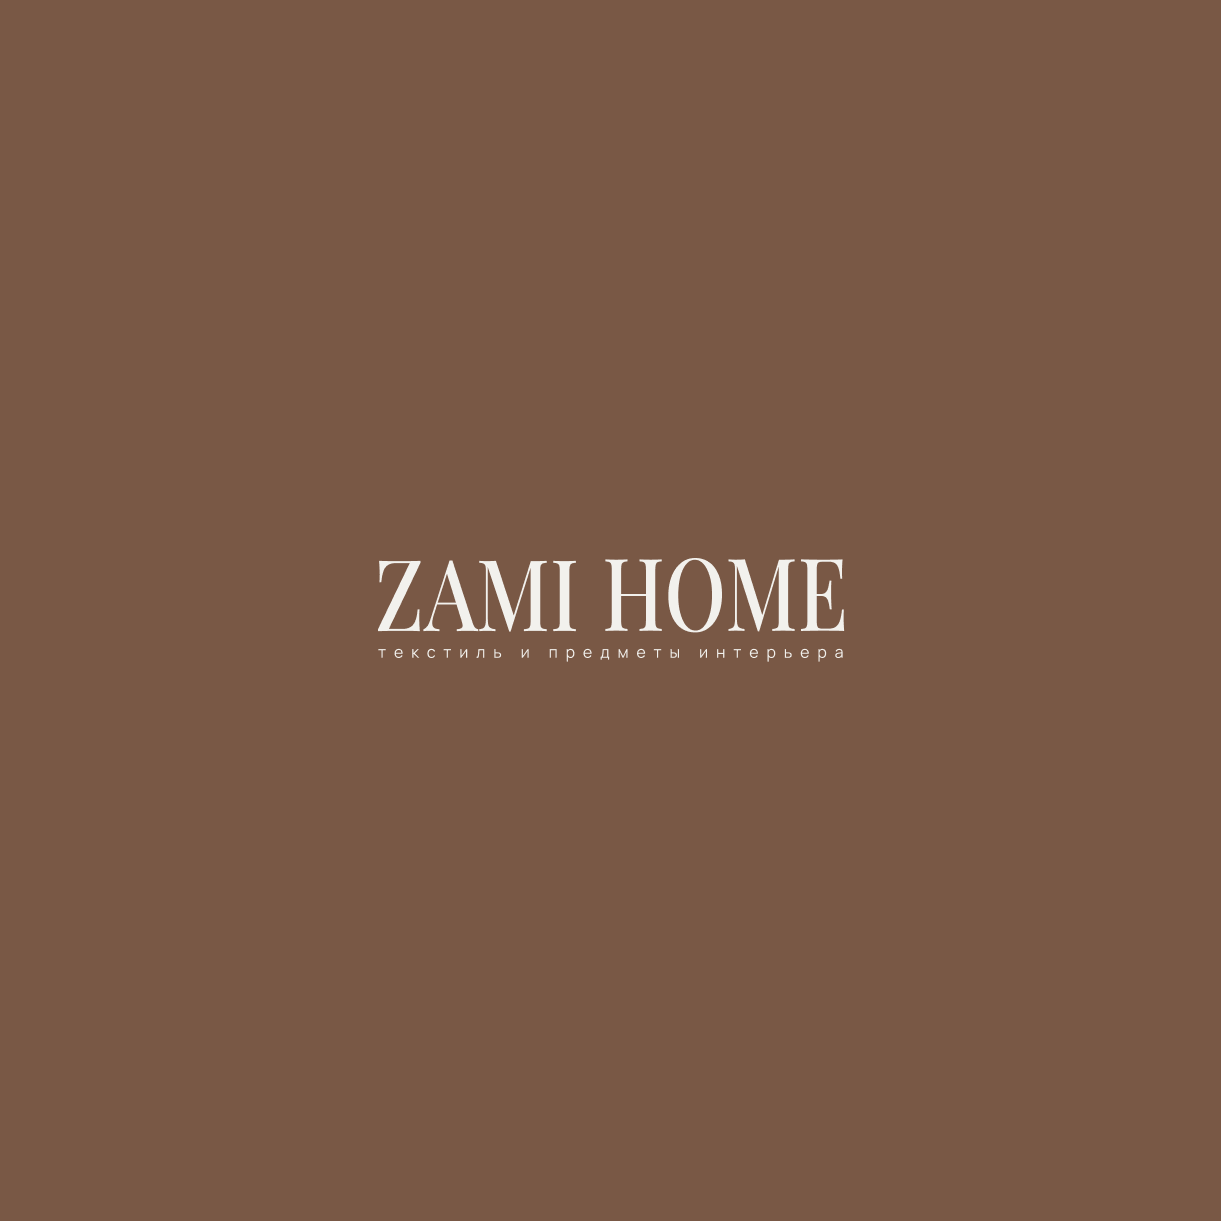 ZAMI HOME — Изображение №2 — Брендинг, Графика на Dprofile